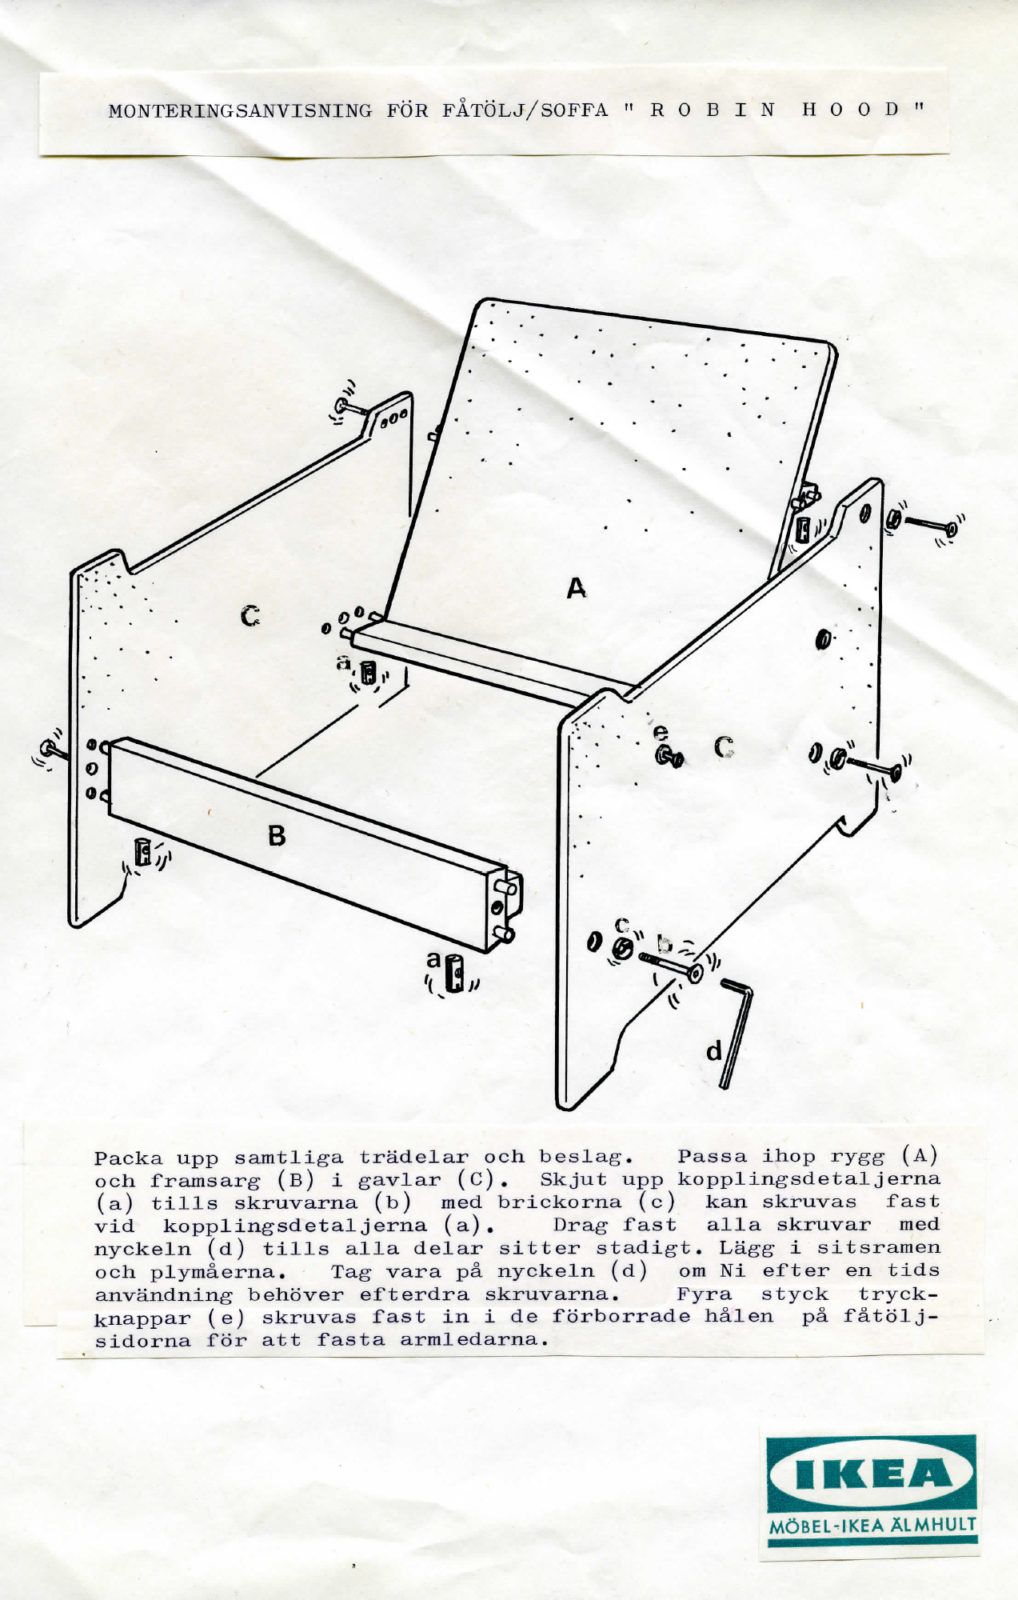 Faksimil av IKEA monteringsanvisning för fåtölj med förklaring av hur insexnyckeln ska användas.